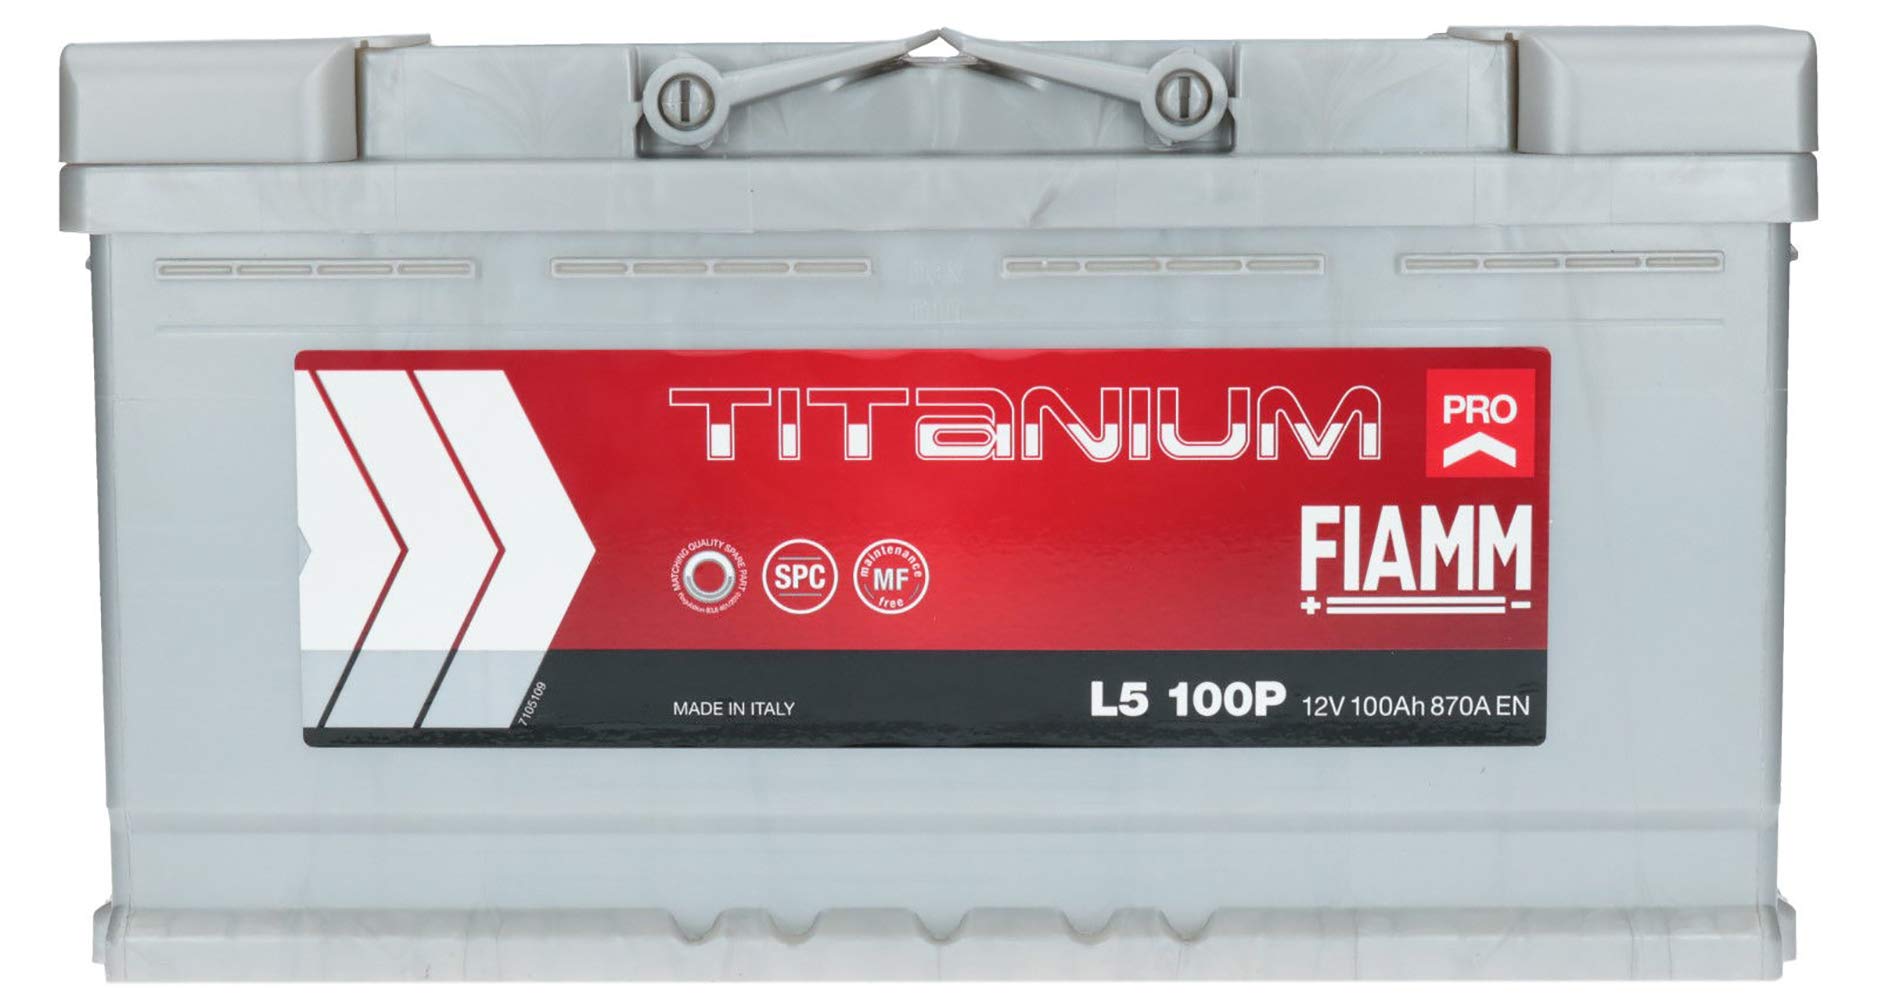 Kfz-Batterie Fiamm Titanium Pro, 100 Ah, 870A L5 100P 7905160 von SMC